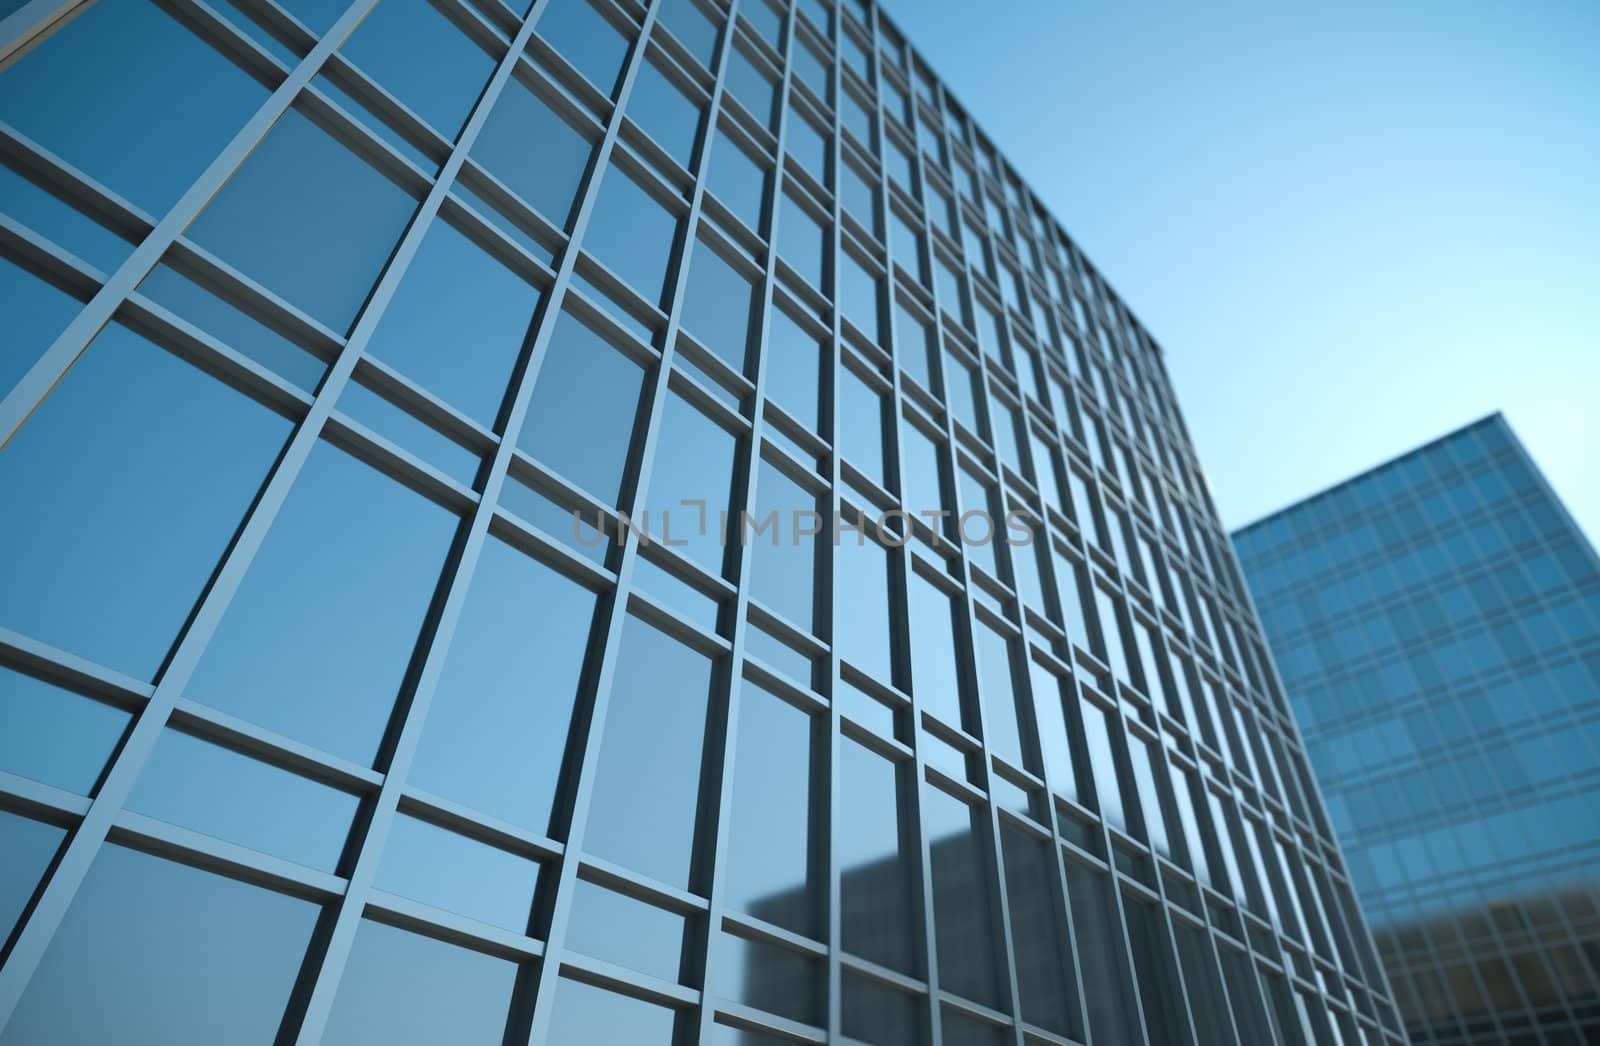 High office buildings, 3D render.